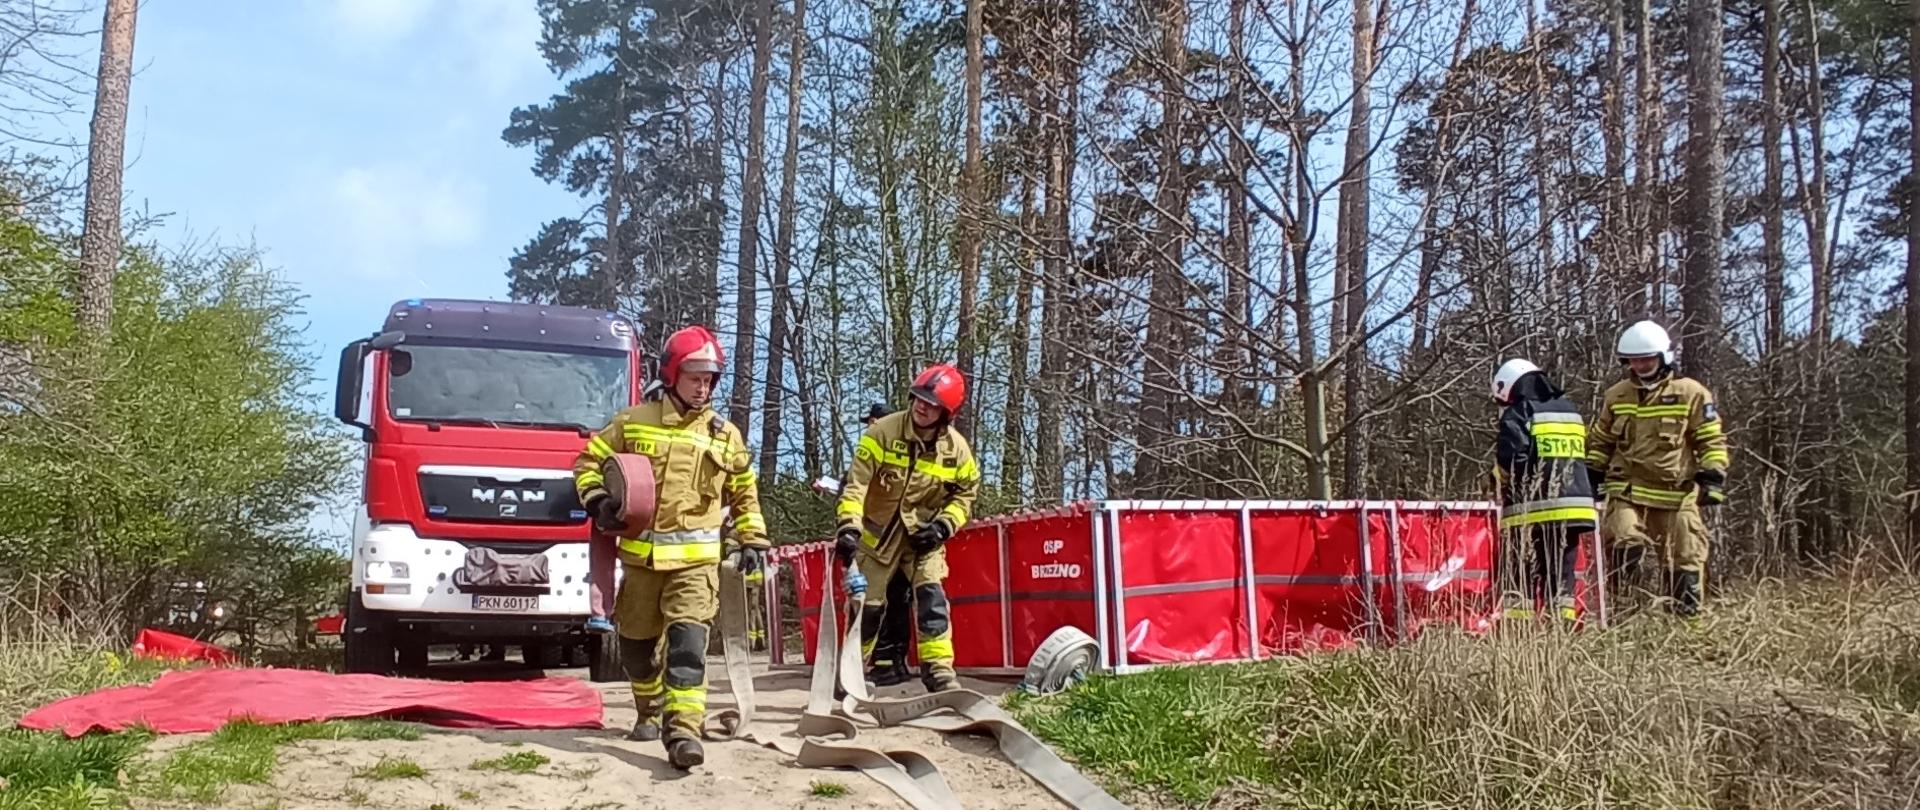 Na pierwszym planie widać dwóch strażaków z Państwowej Straży Pożarnej rozwijających węże pożarnicze. Po prawej stronie dwóch druhów z OSP rozkłada zbiornik brezentowy na wodę. W tle widać samochód pożarniczy